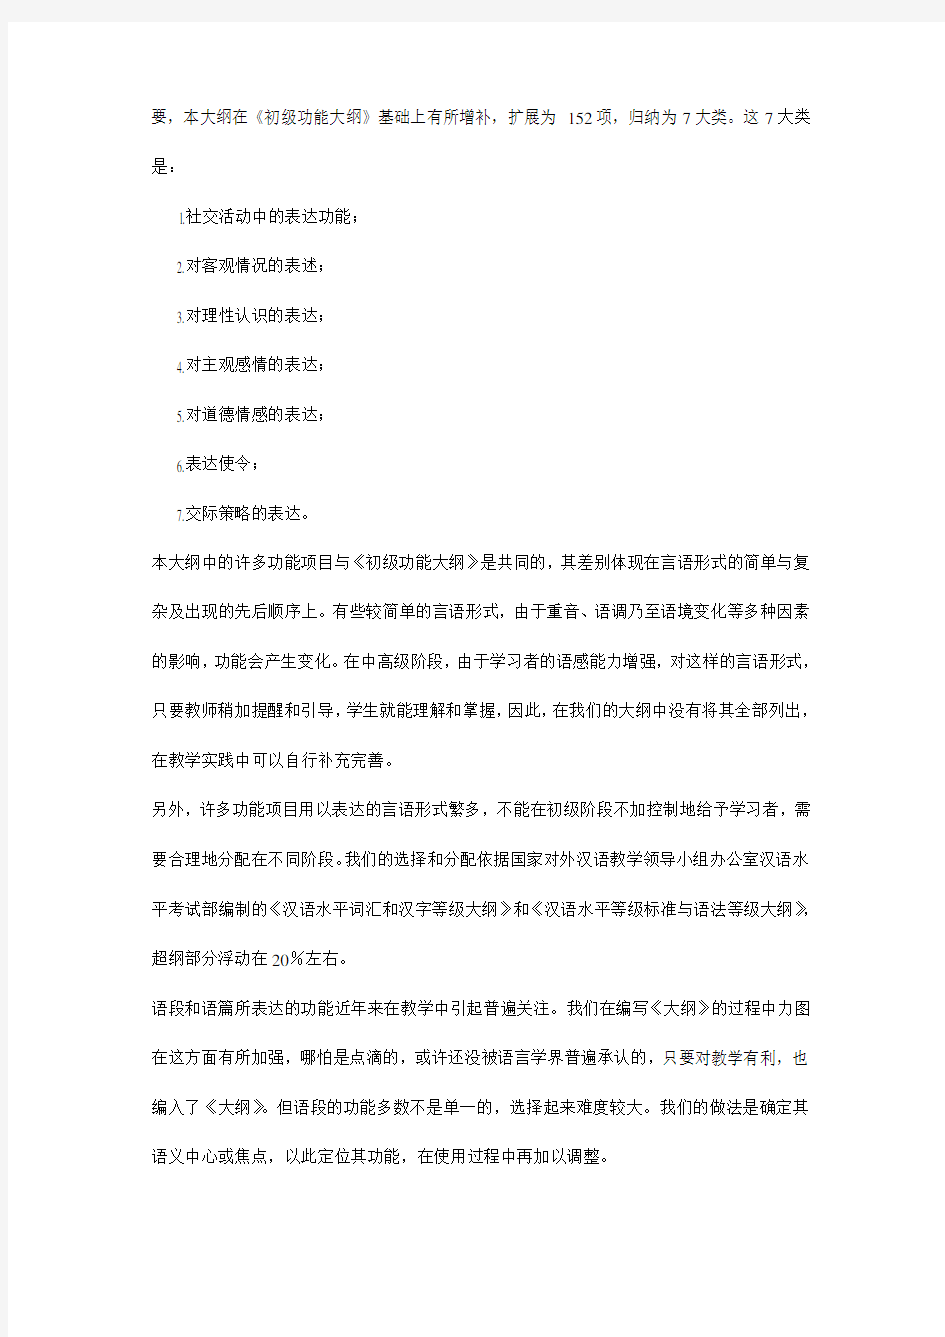 (完整版)对外汉语教学中高级阶段功能大纲